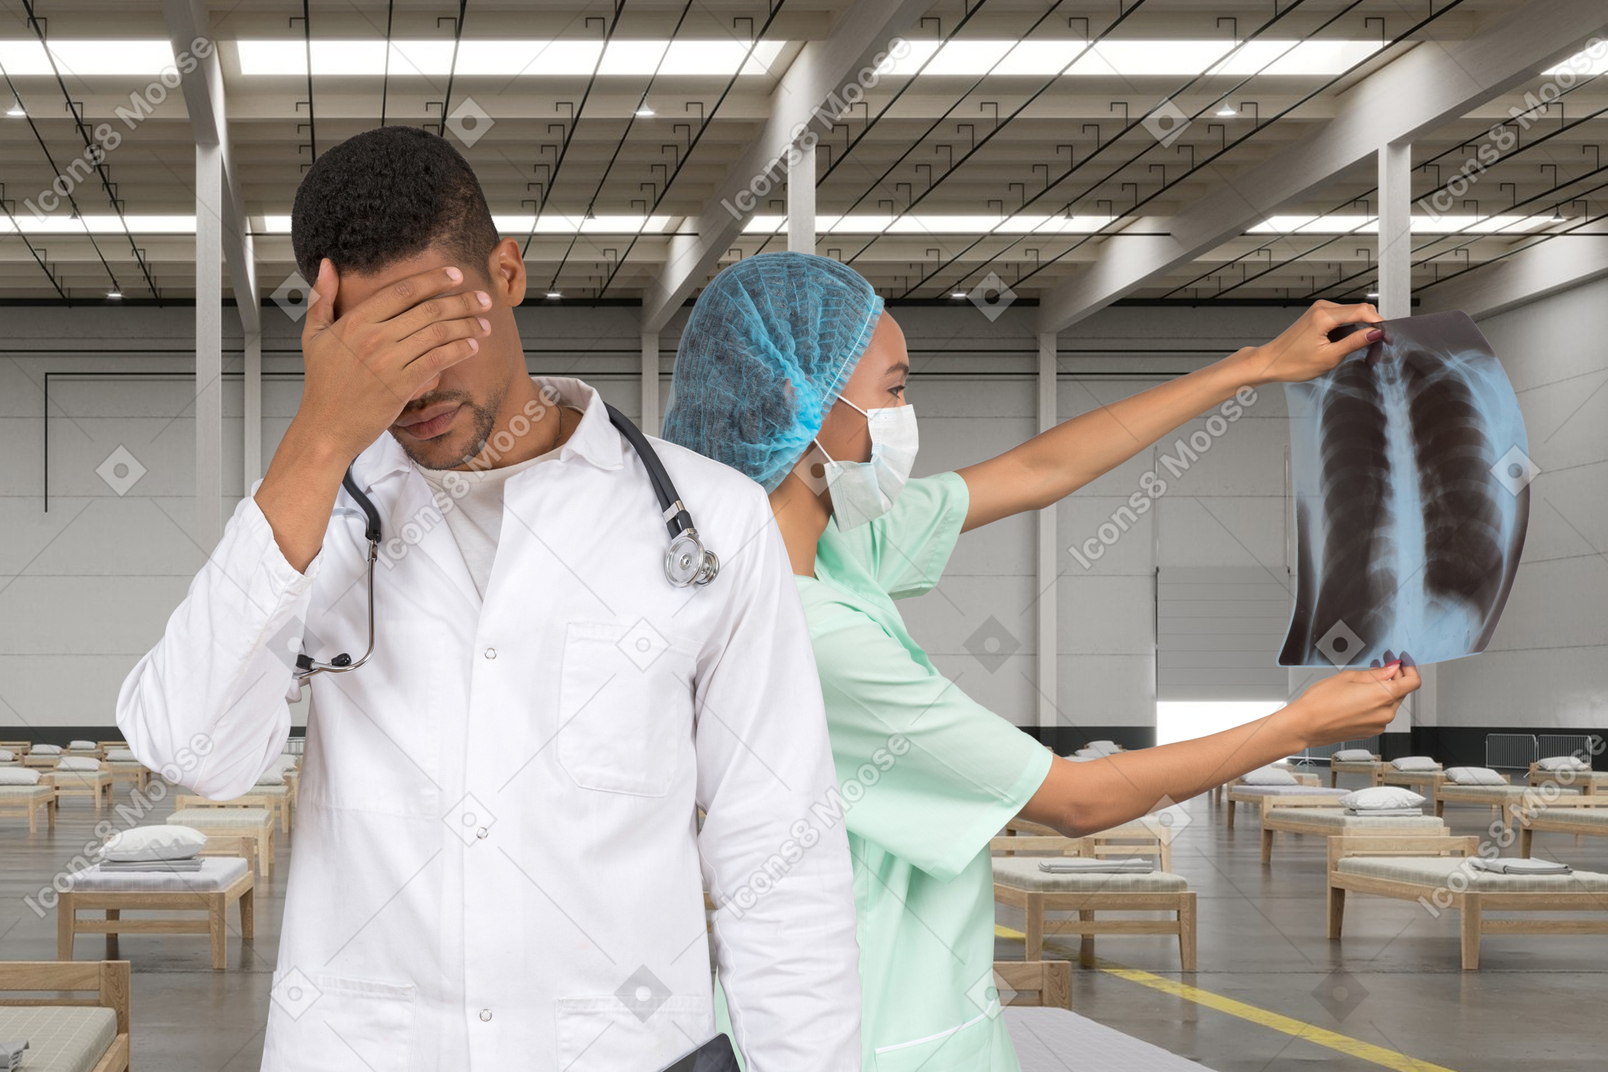 X-ray를 보고 얼굴 손바닥을 한 남자 의사 옆에 서 있는 여자 의사